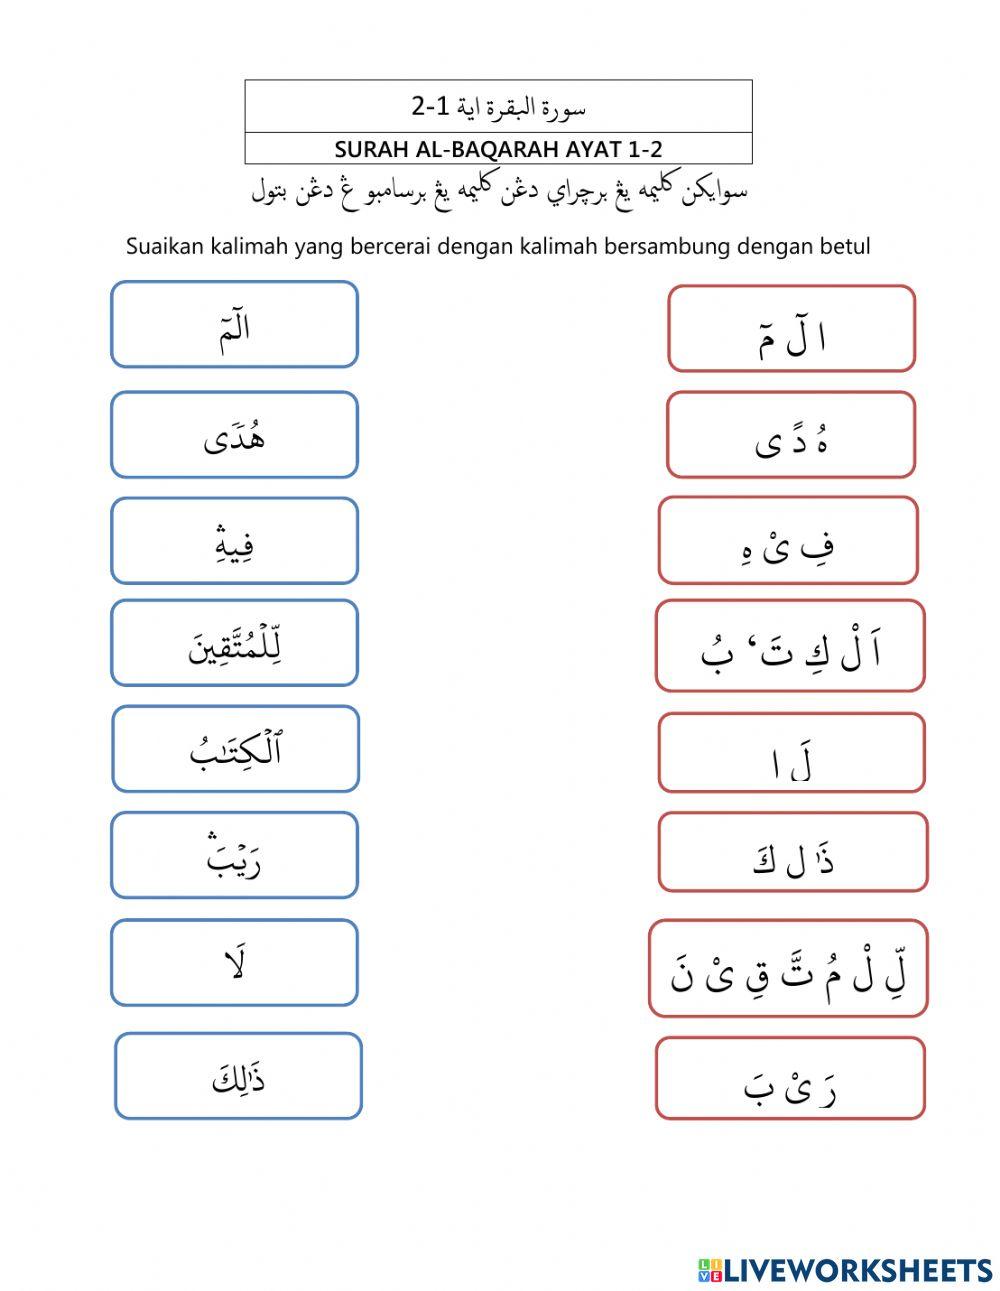 Al-Quran Surah Al-Baqarah